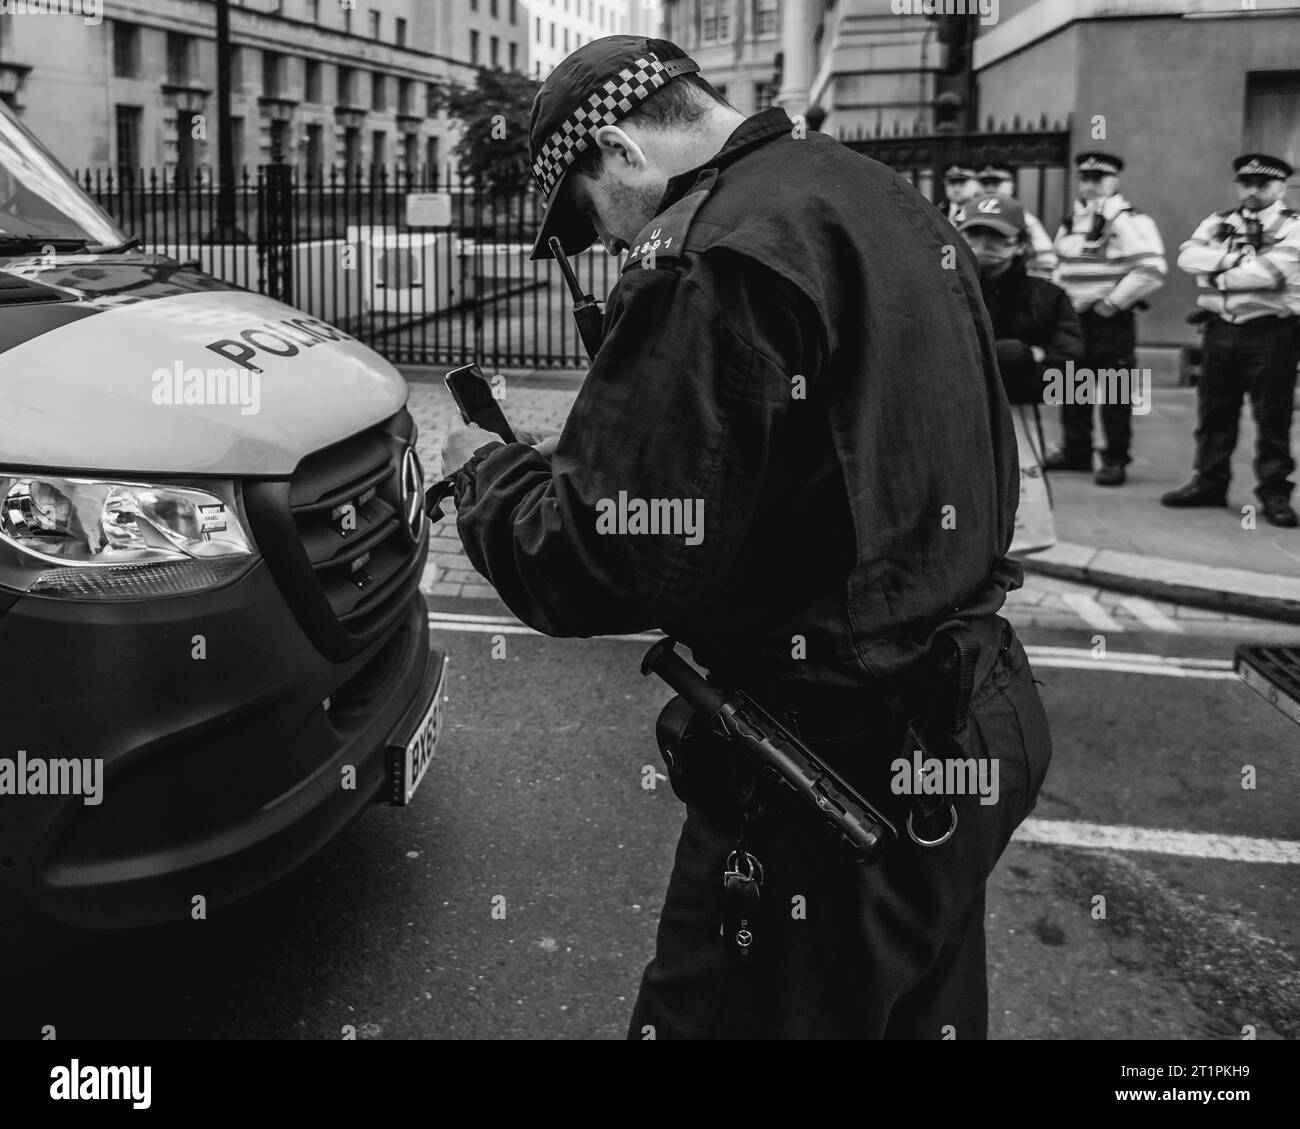 Un officier de police met prend une photo d'un autocollant Pro palestinien laissé sur le fourgon de la police lors de la marche à Londres. Banque D'Images